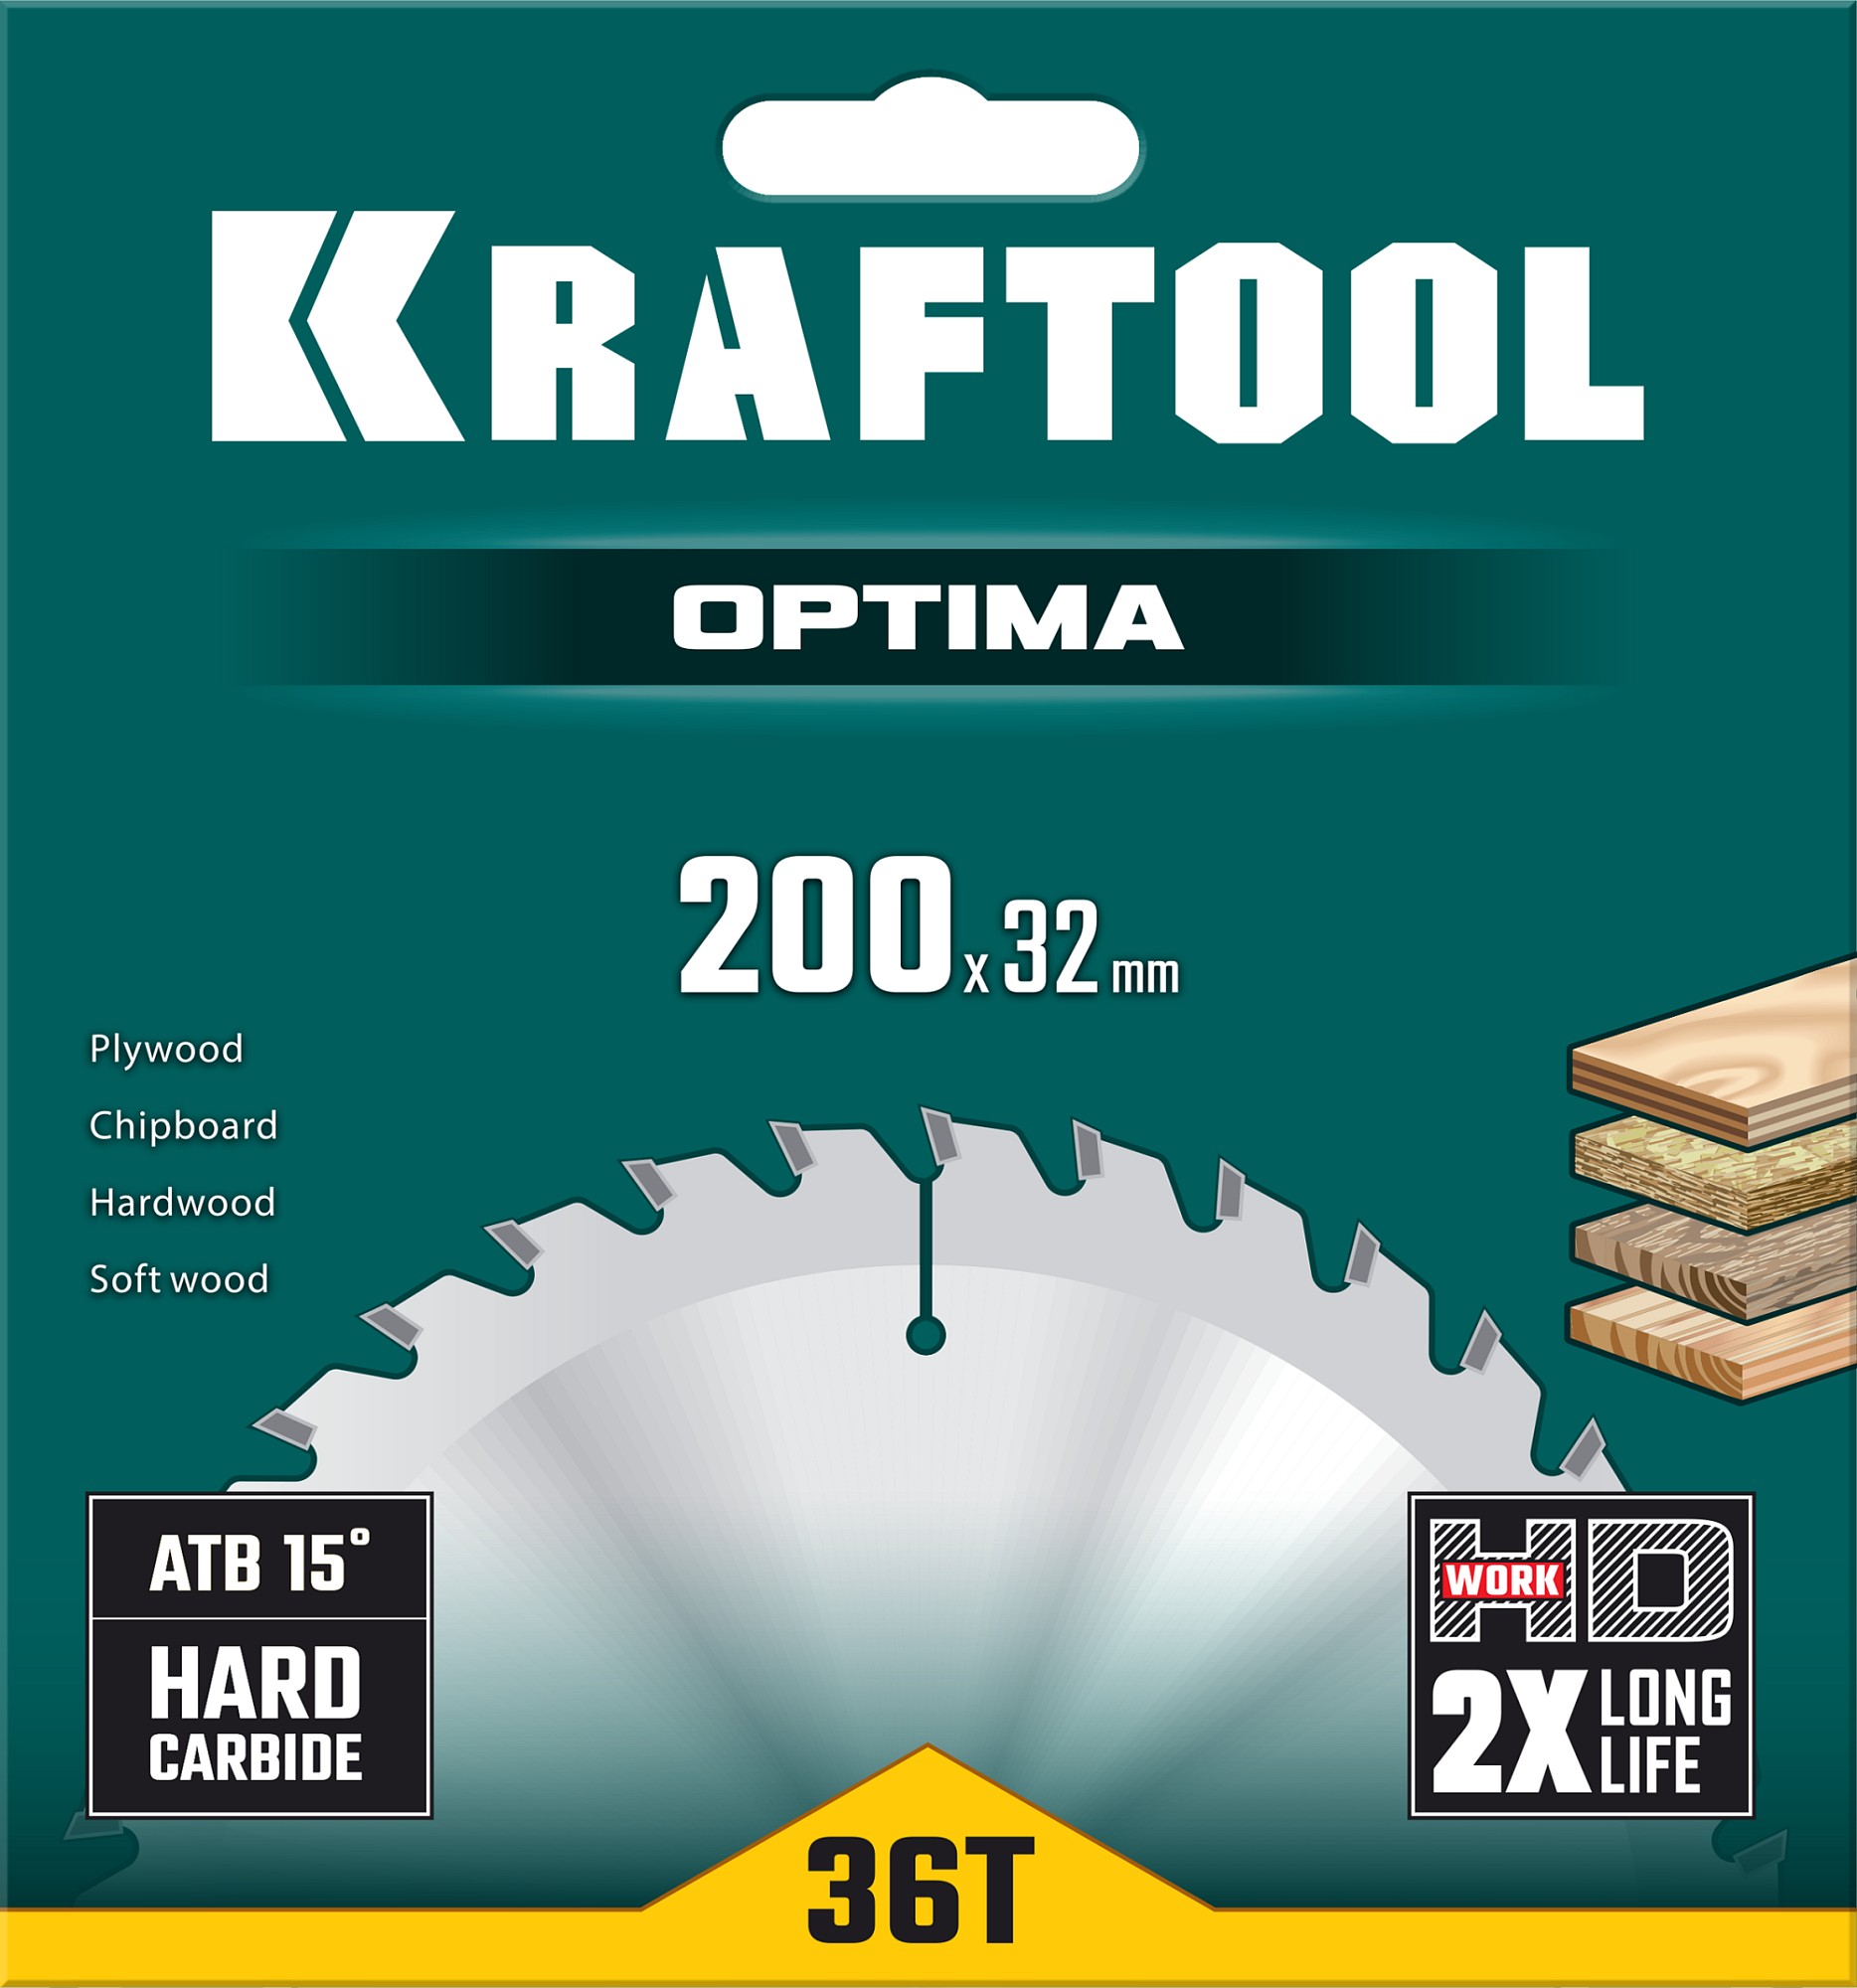 KRAFTOOL Optima, 200 х 32 мм, 36Т, пильный диск по дереву (36951-200-32)